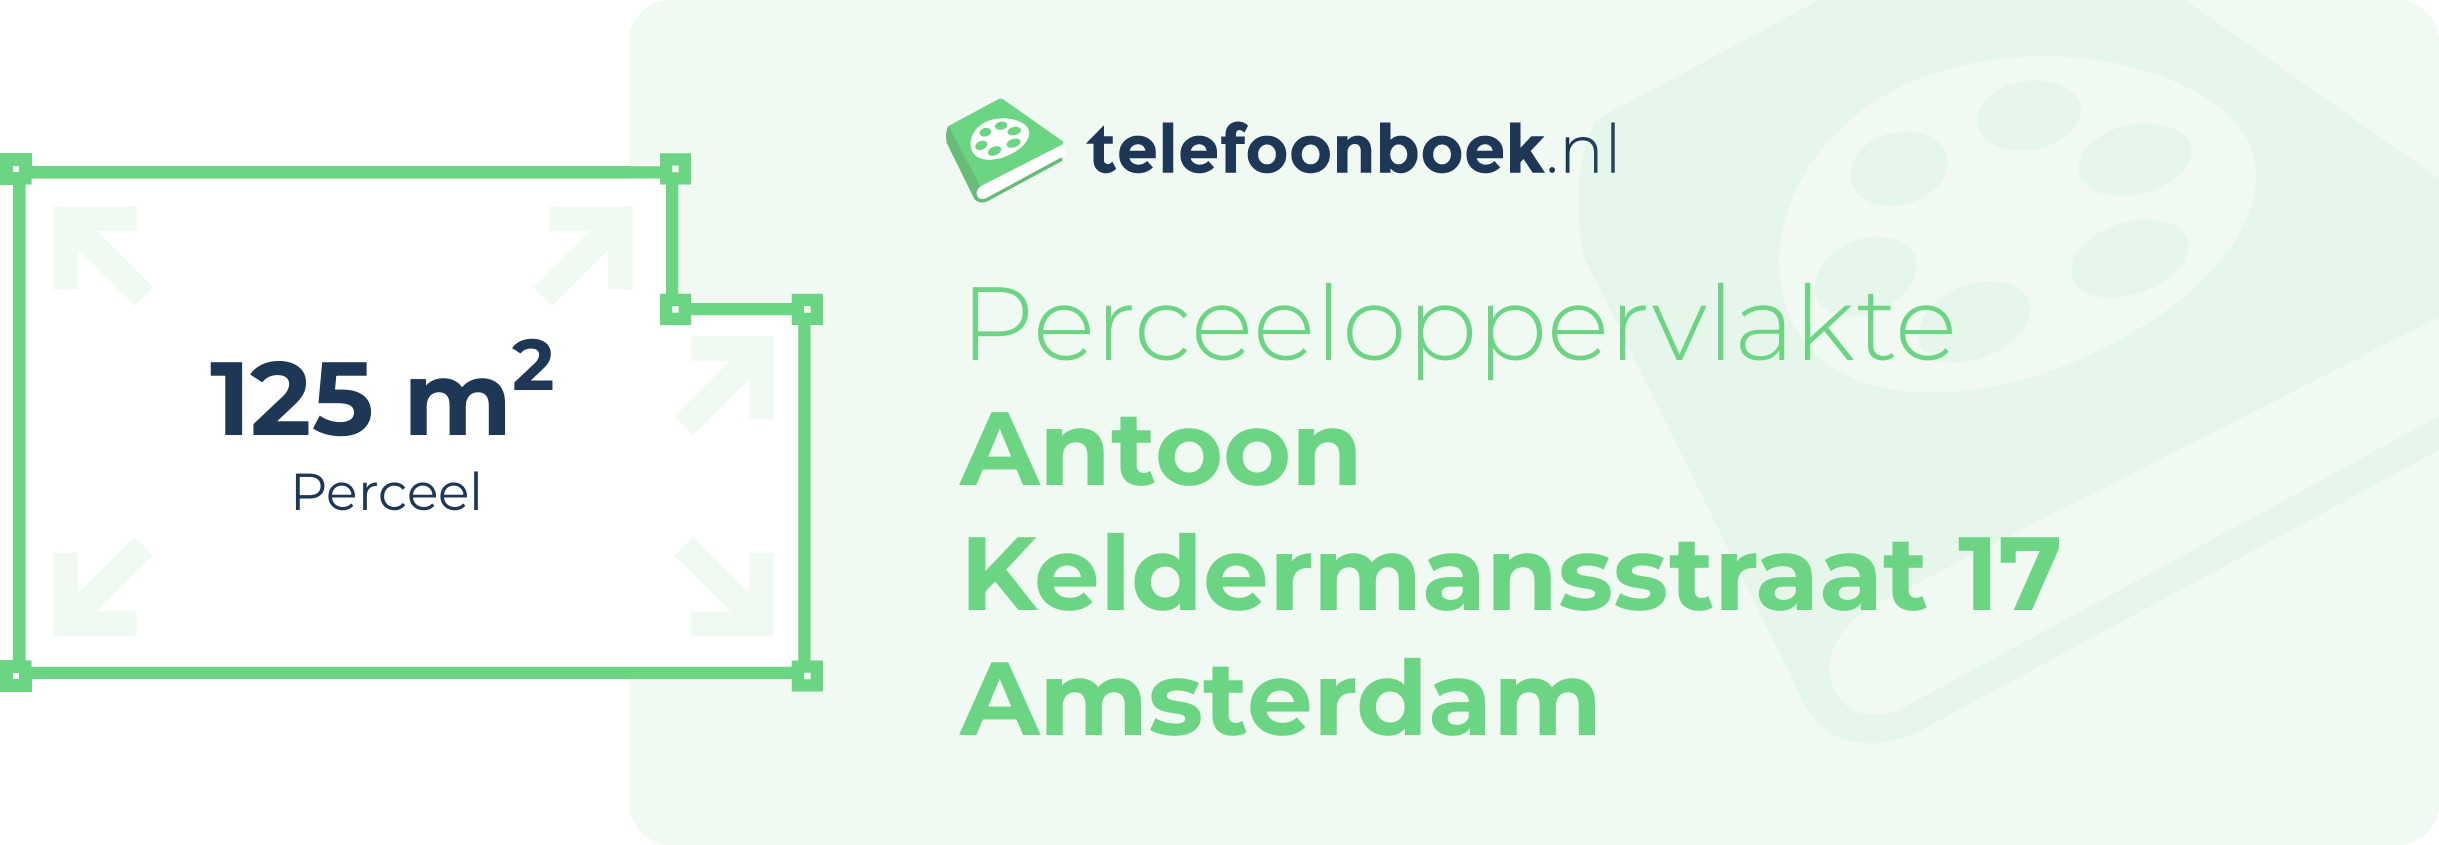 Perceeloppervlakte Antoon Keldermansstraat 17 Amsterdam